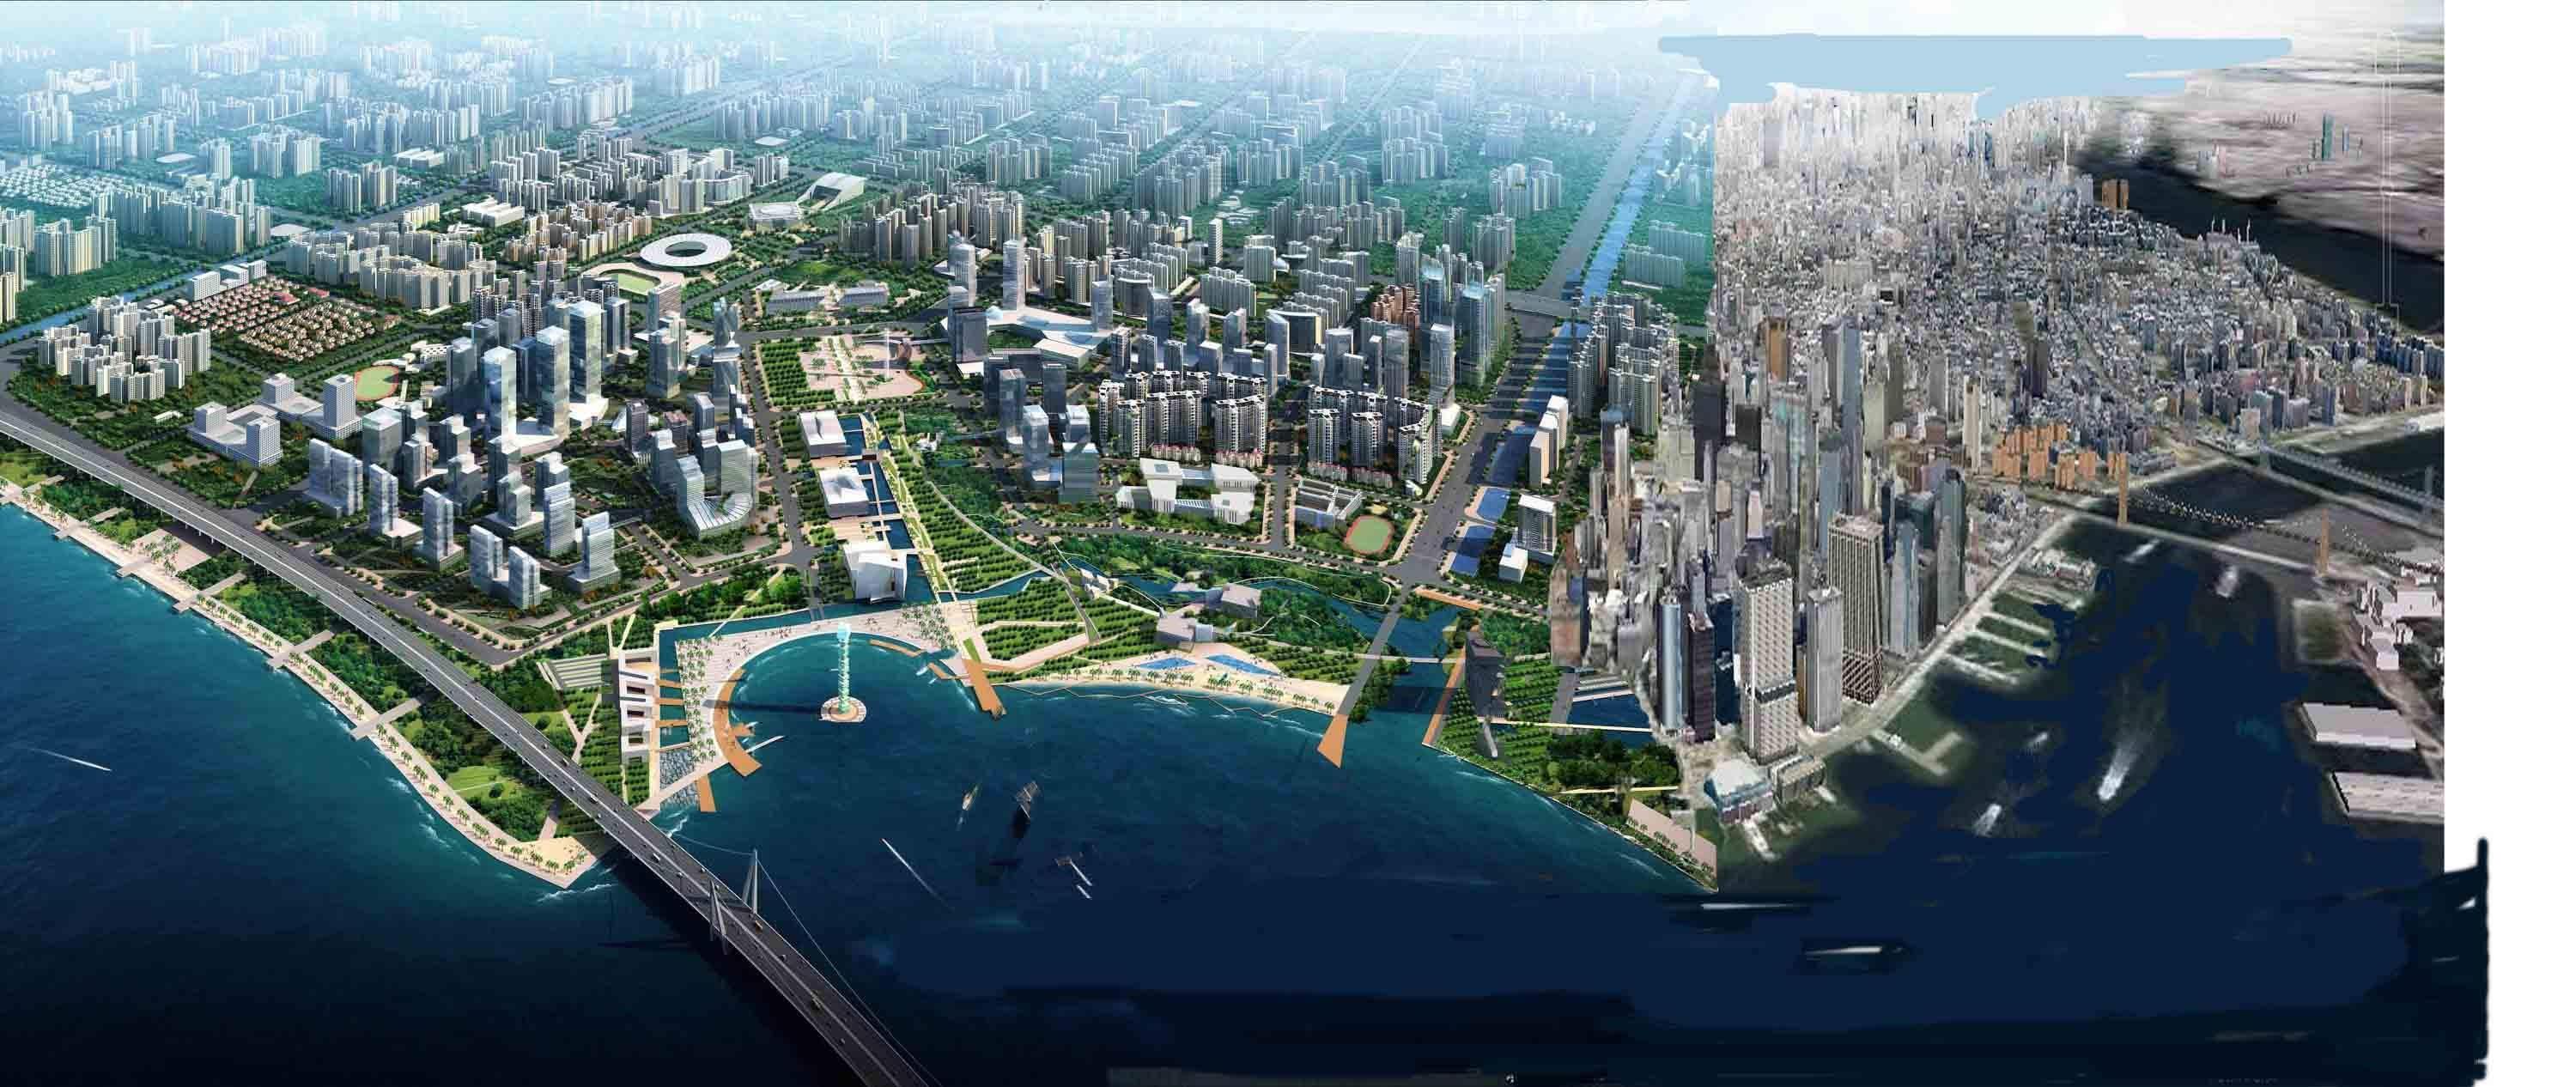 湾区大发展,珠海横琴自贸区房价位居三大自贸区之首,势不可挡?